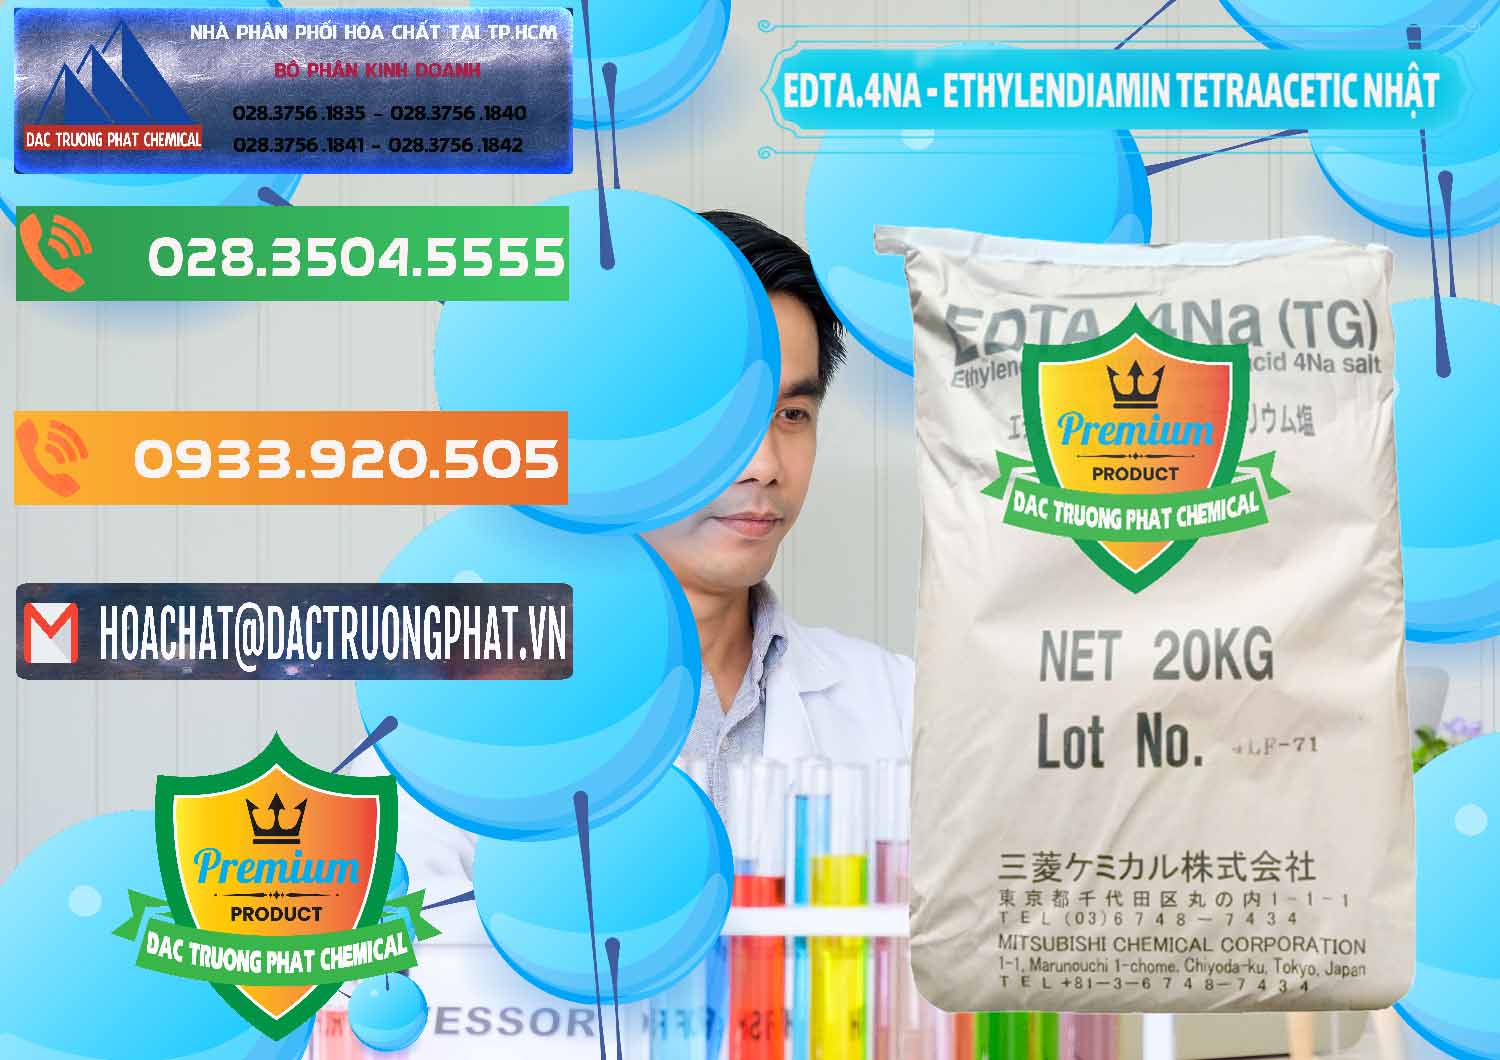 Đơn vị bán _ cung cấp EDTA 4Na - Ethylendiamin Tetraacetic Nhật Bản Japan - 0482 - Đơn vị chuyên cung ứng và phân phối hóa chất tại TP.HCM - hoachatxulynuoc.com.vn